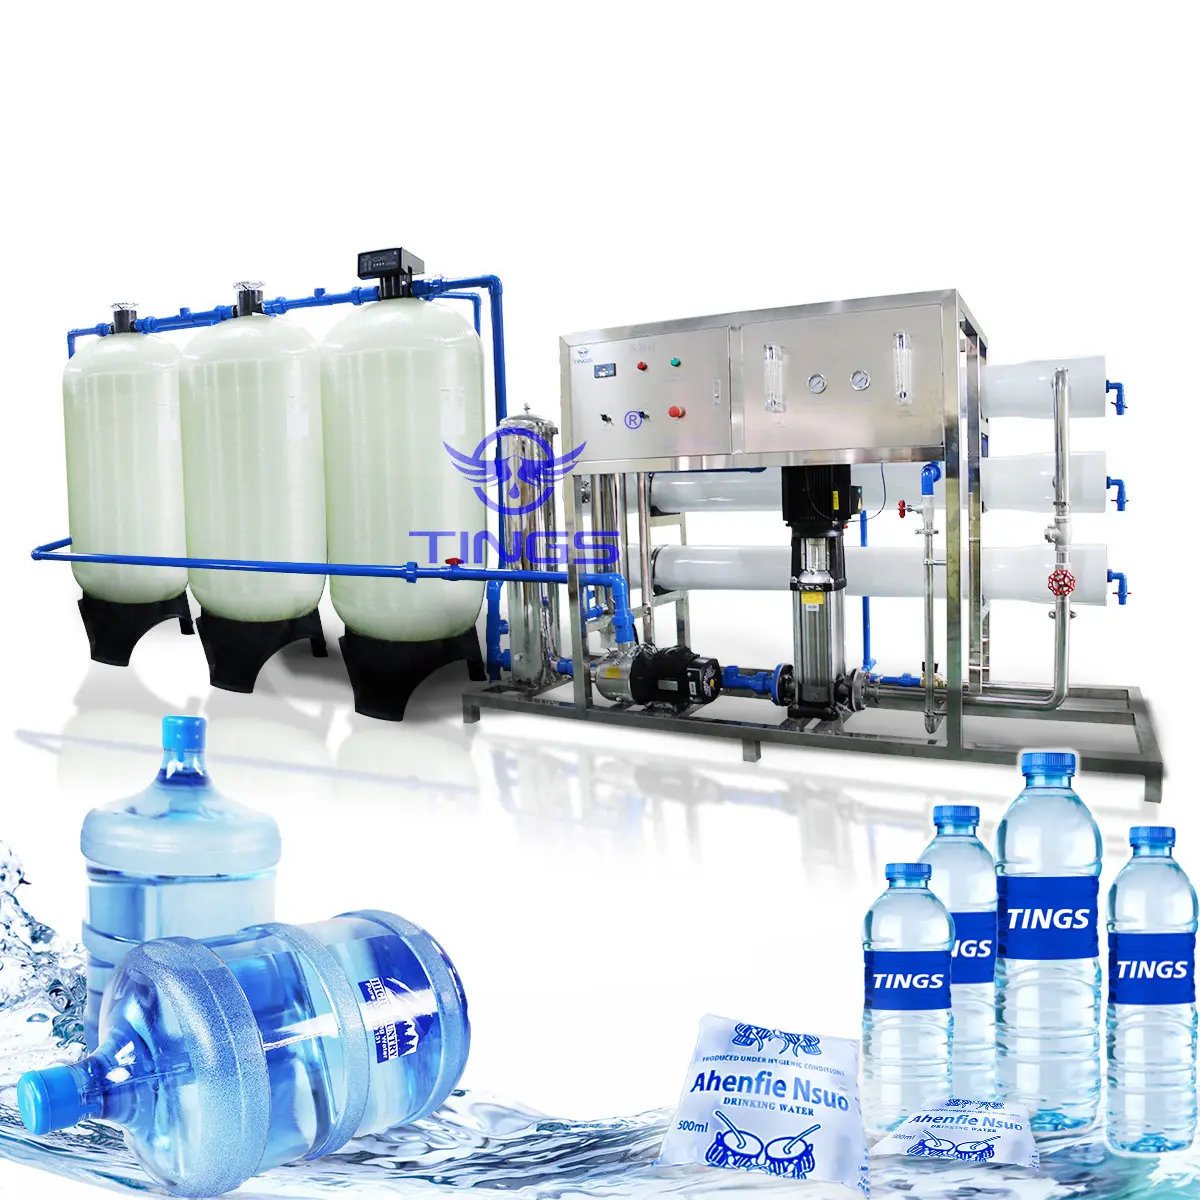 पानी छानने का काम प्रणाली के लिए औद्योगिक आरओ संयंत्र 4000 lph रिवर्स असमस जल शोधक